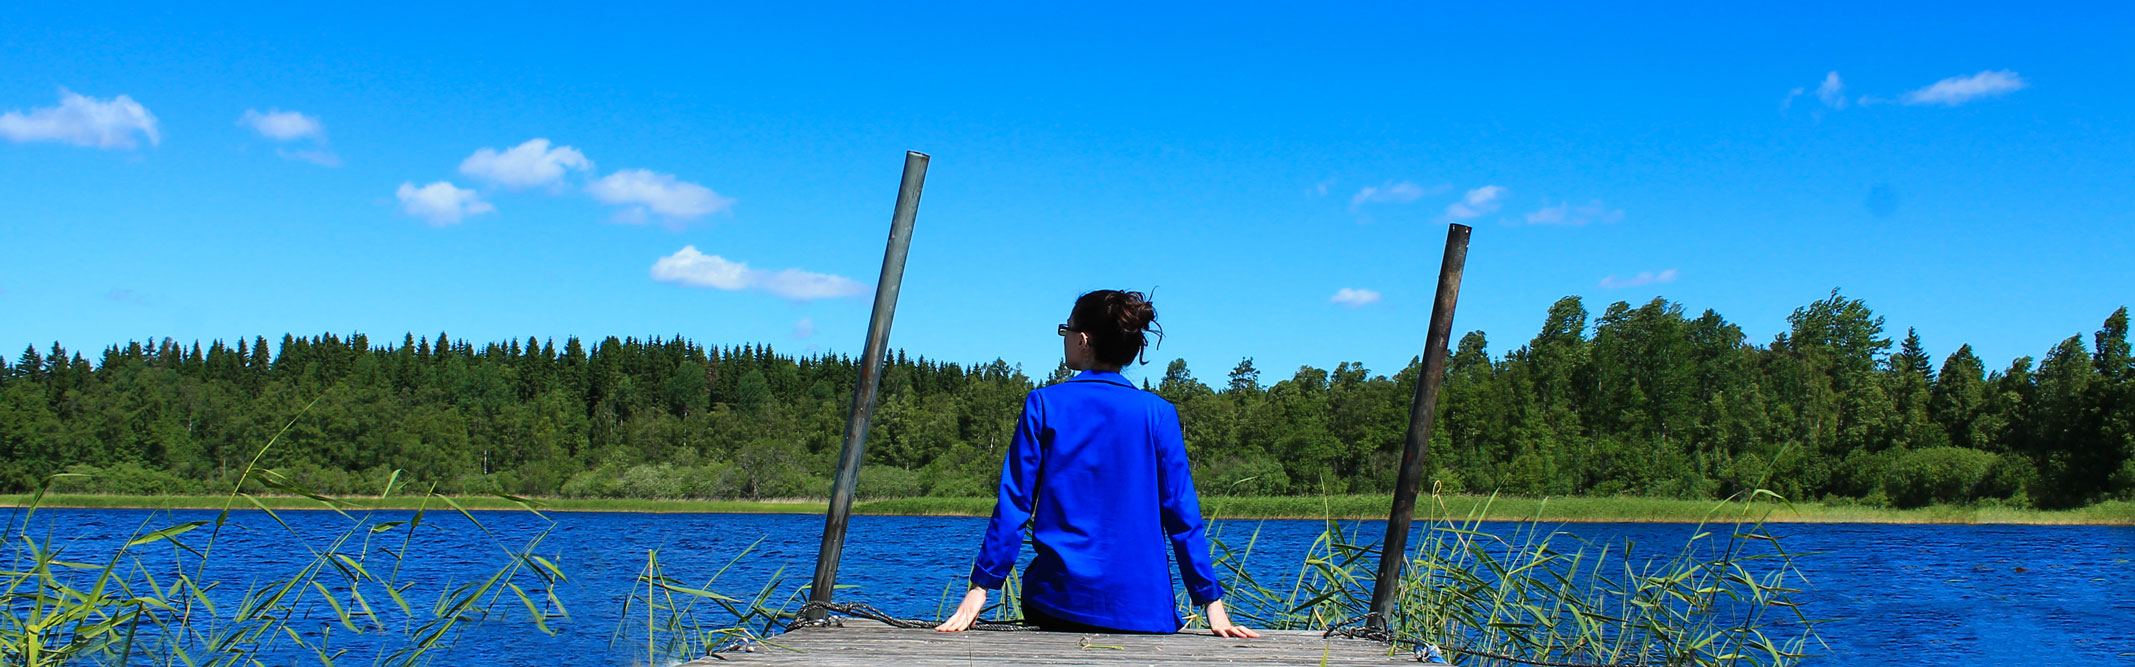 Kvinna sitter på en brygga och tittar över en sjö.